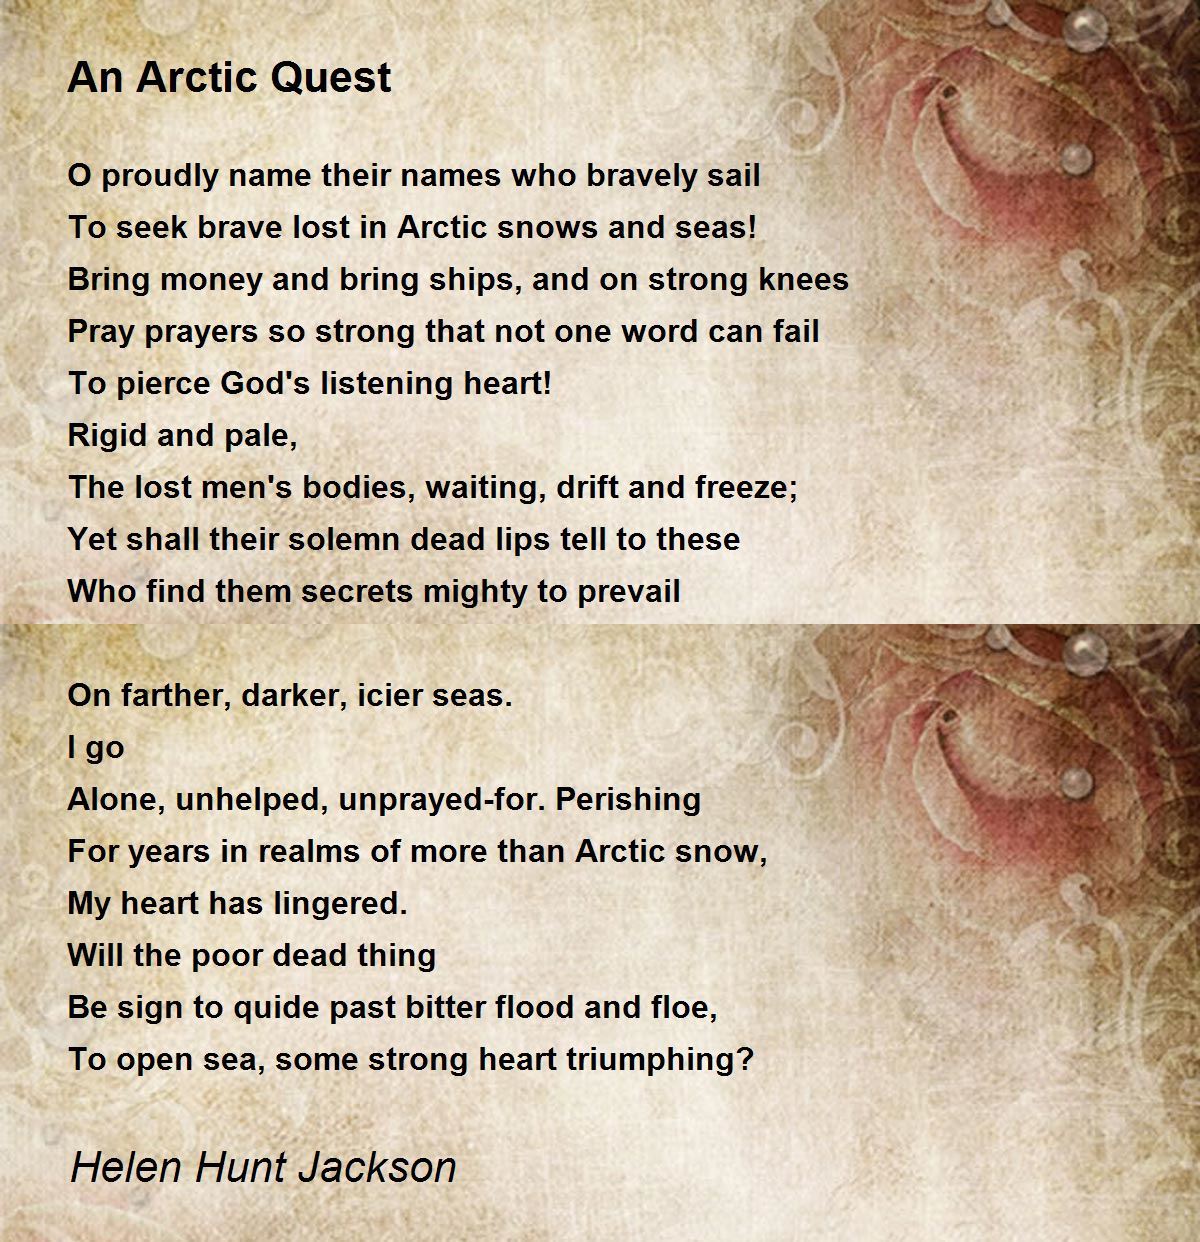 An Arctic Quest - An Arctic Quest Poem by Helen Hunt Jackson